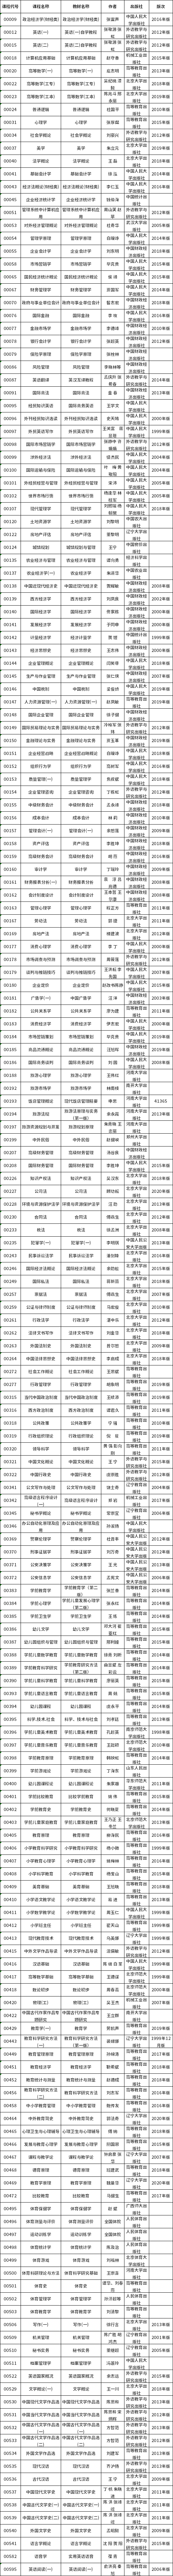 河南省2021年高等教育自学考试使用教材目录